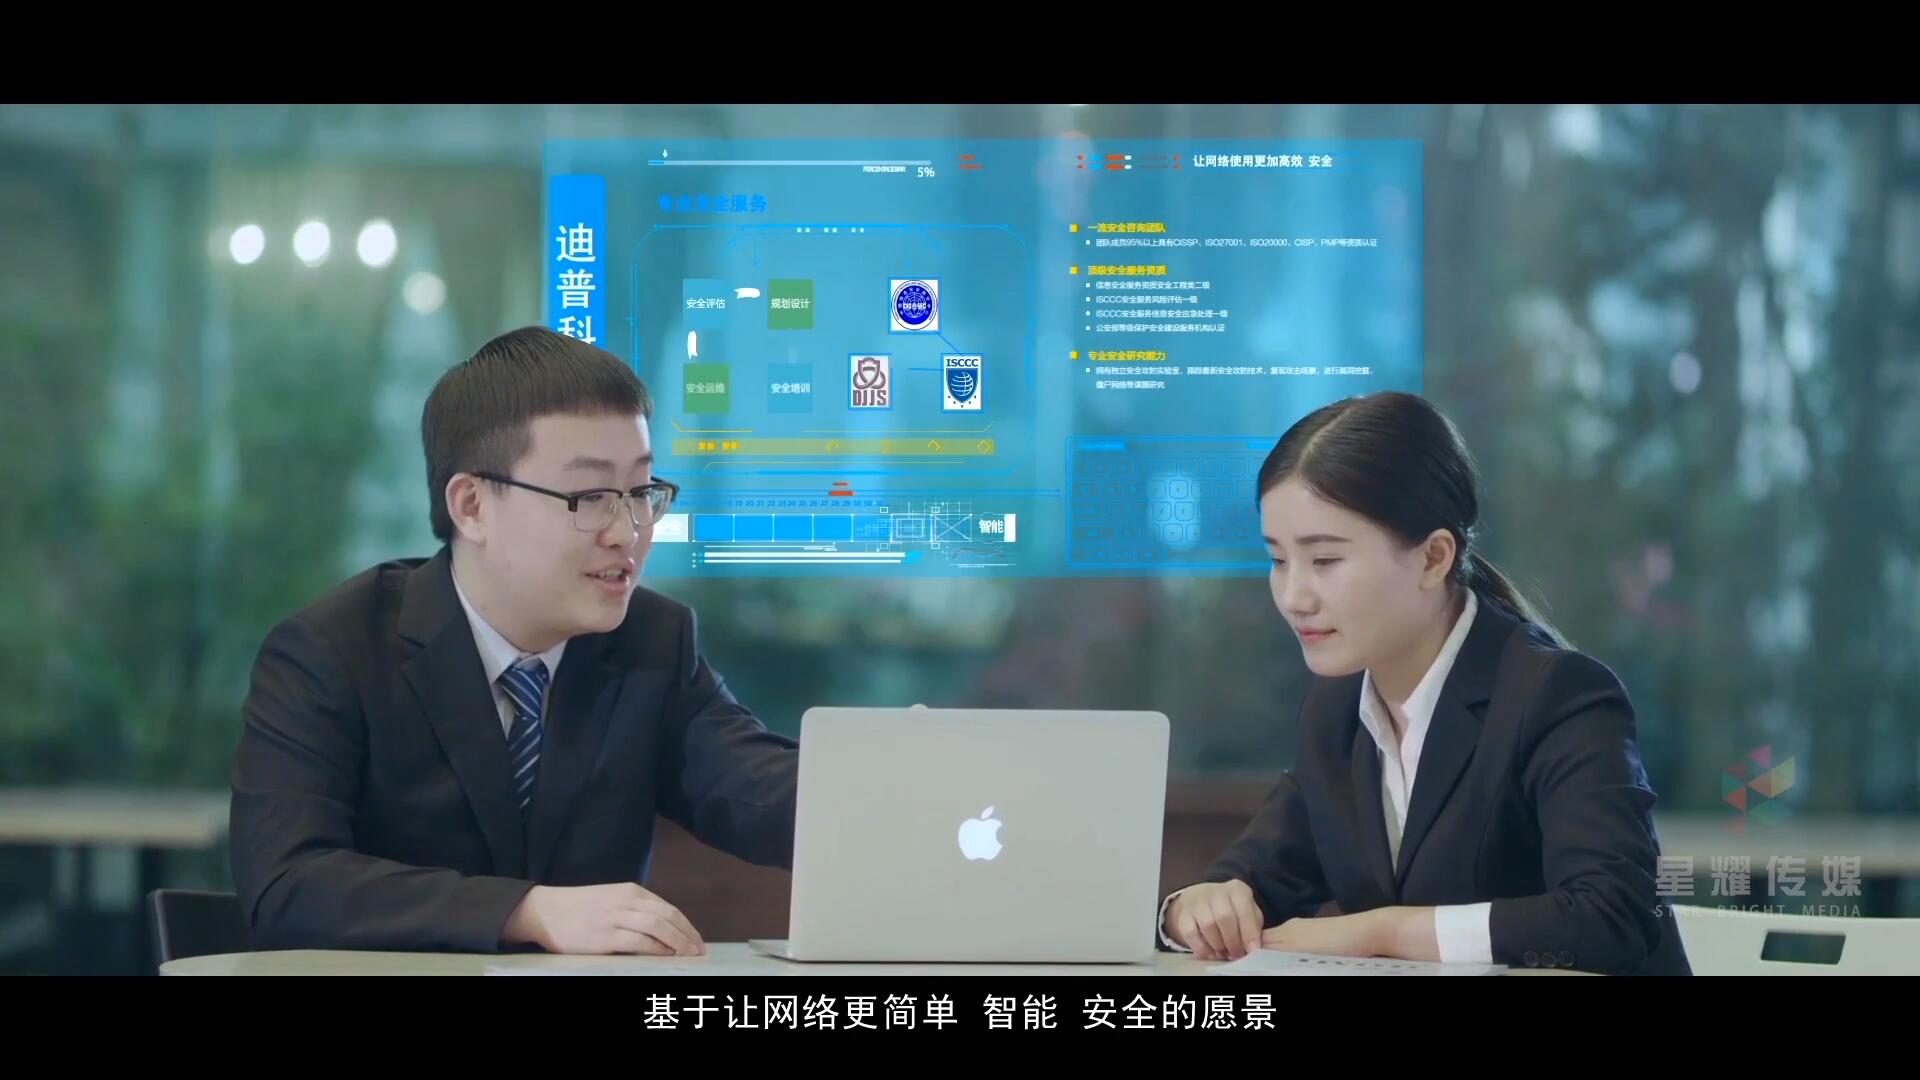 【科技篇】企业宣传片-全息影像虚实交互包装参考 C01插图71